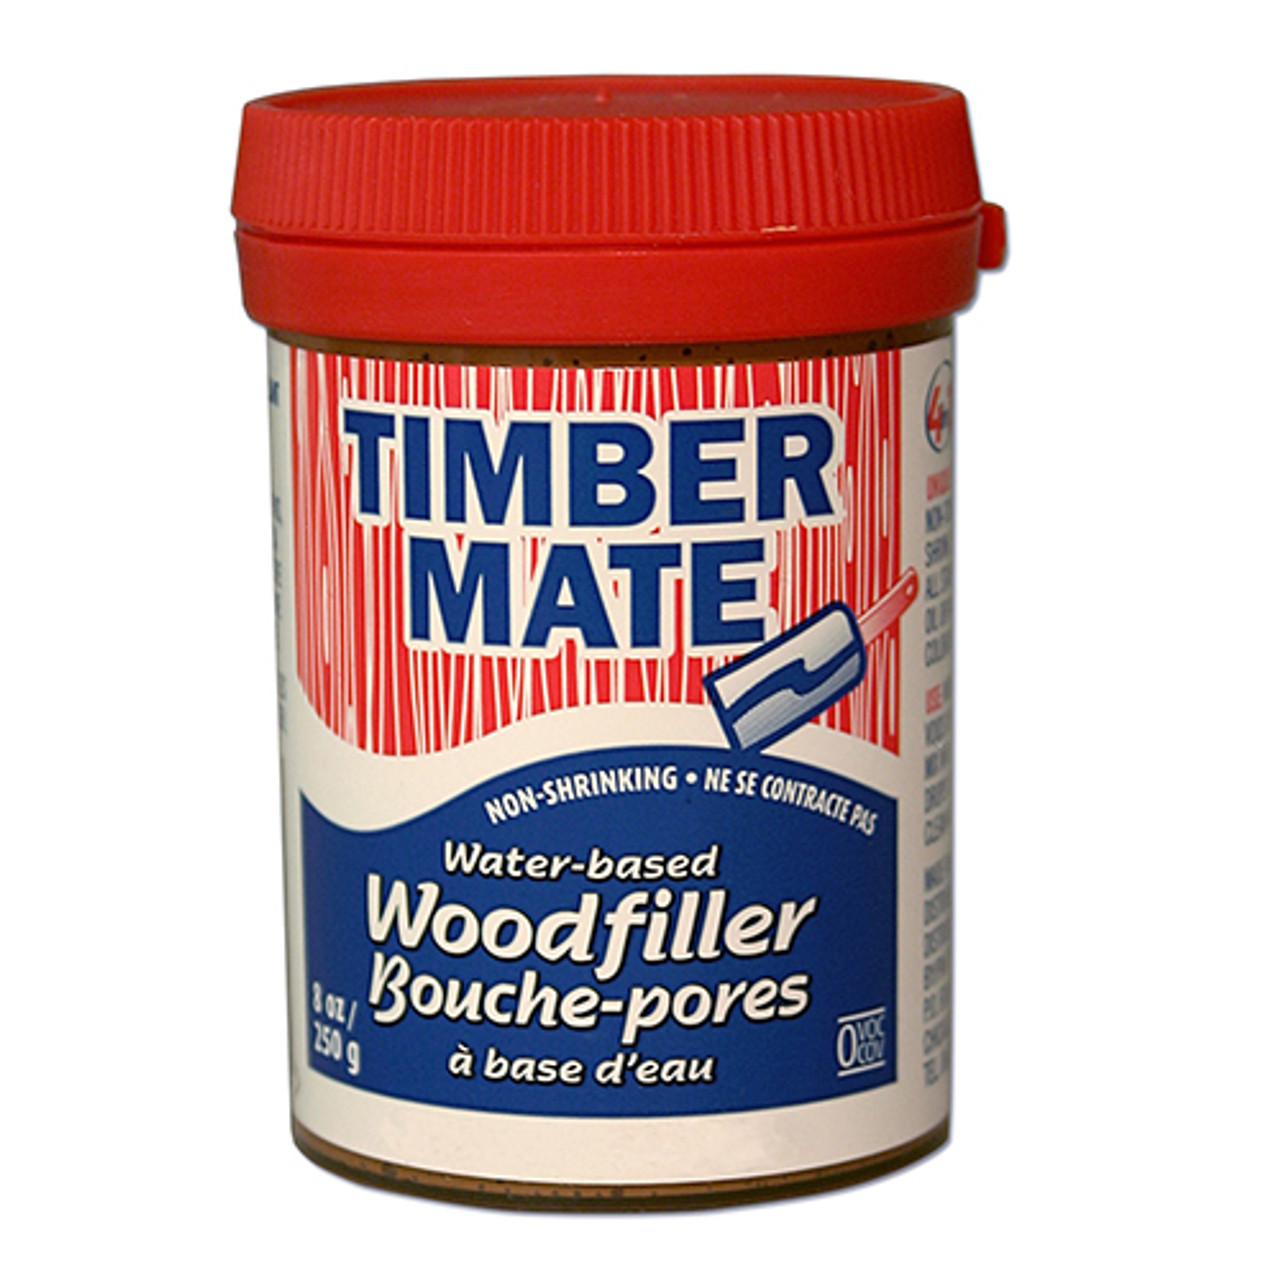 Timbermate Waterbased Wood Filler, Ebony, 8oz